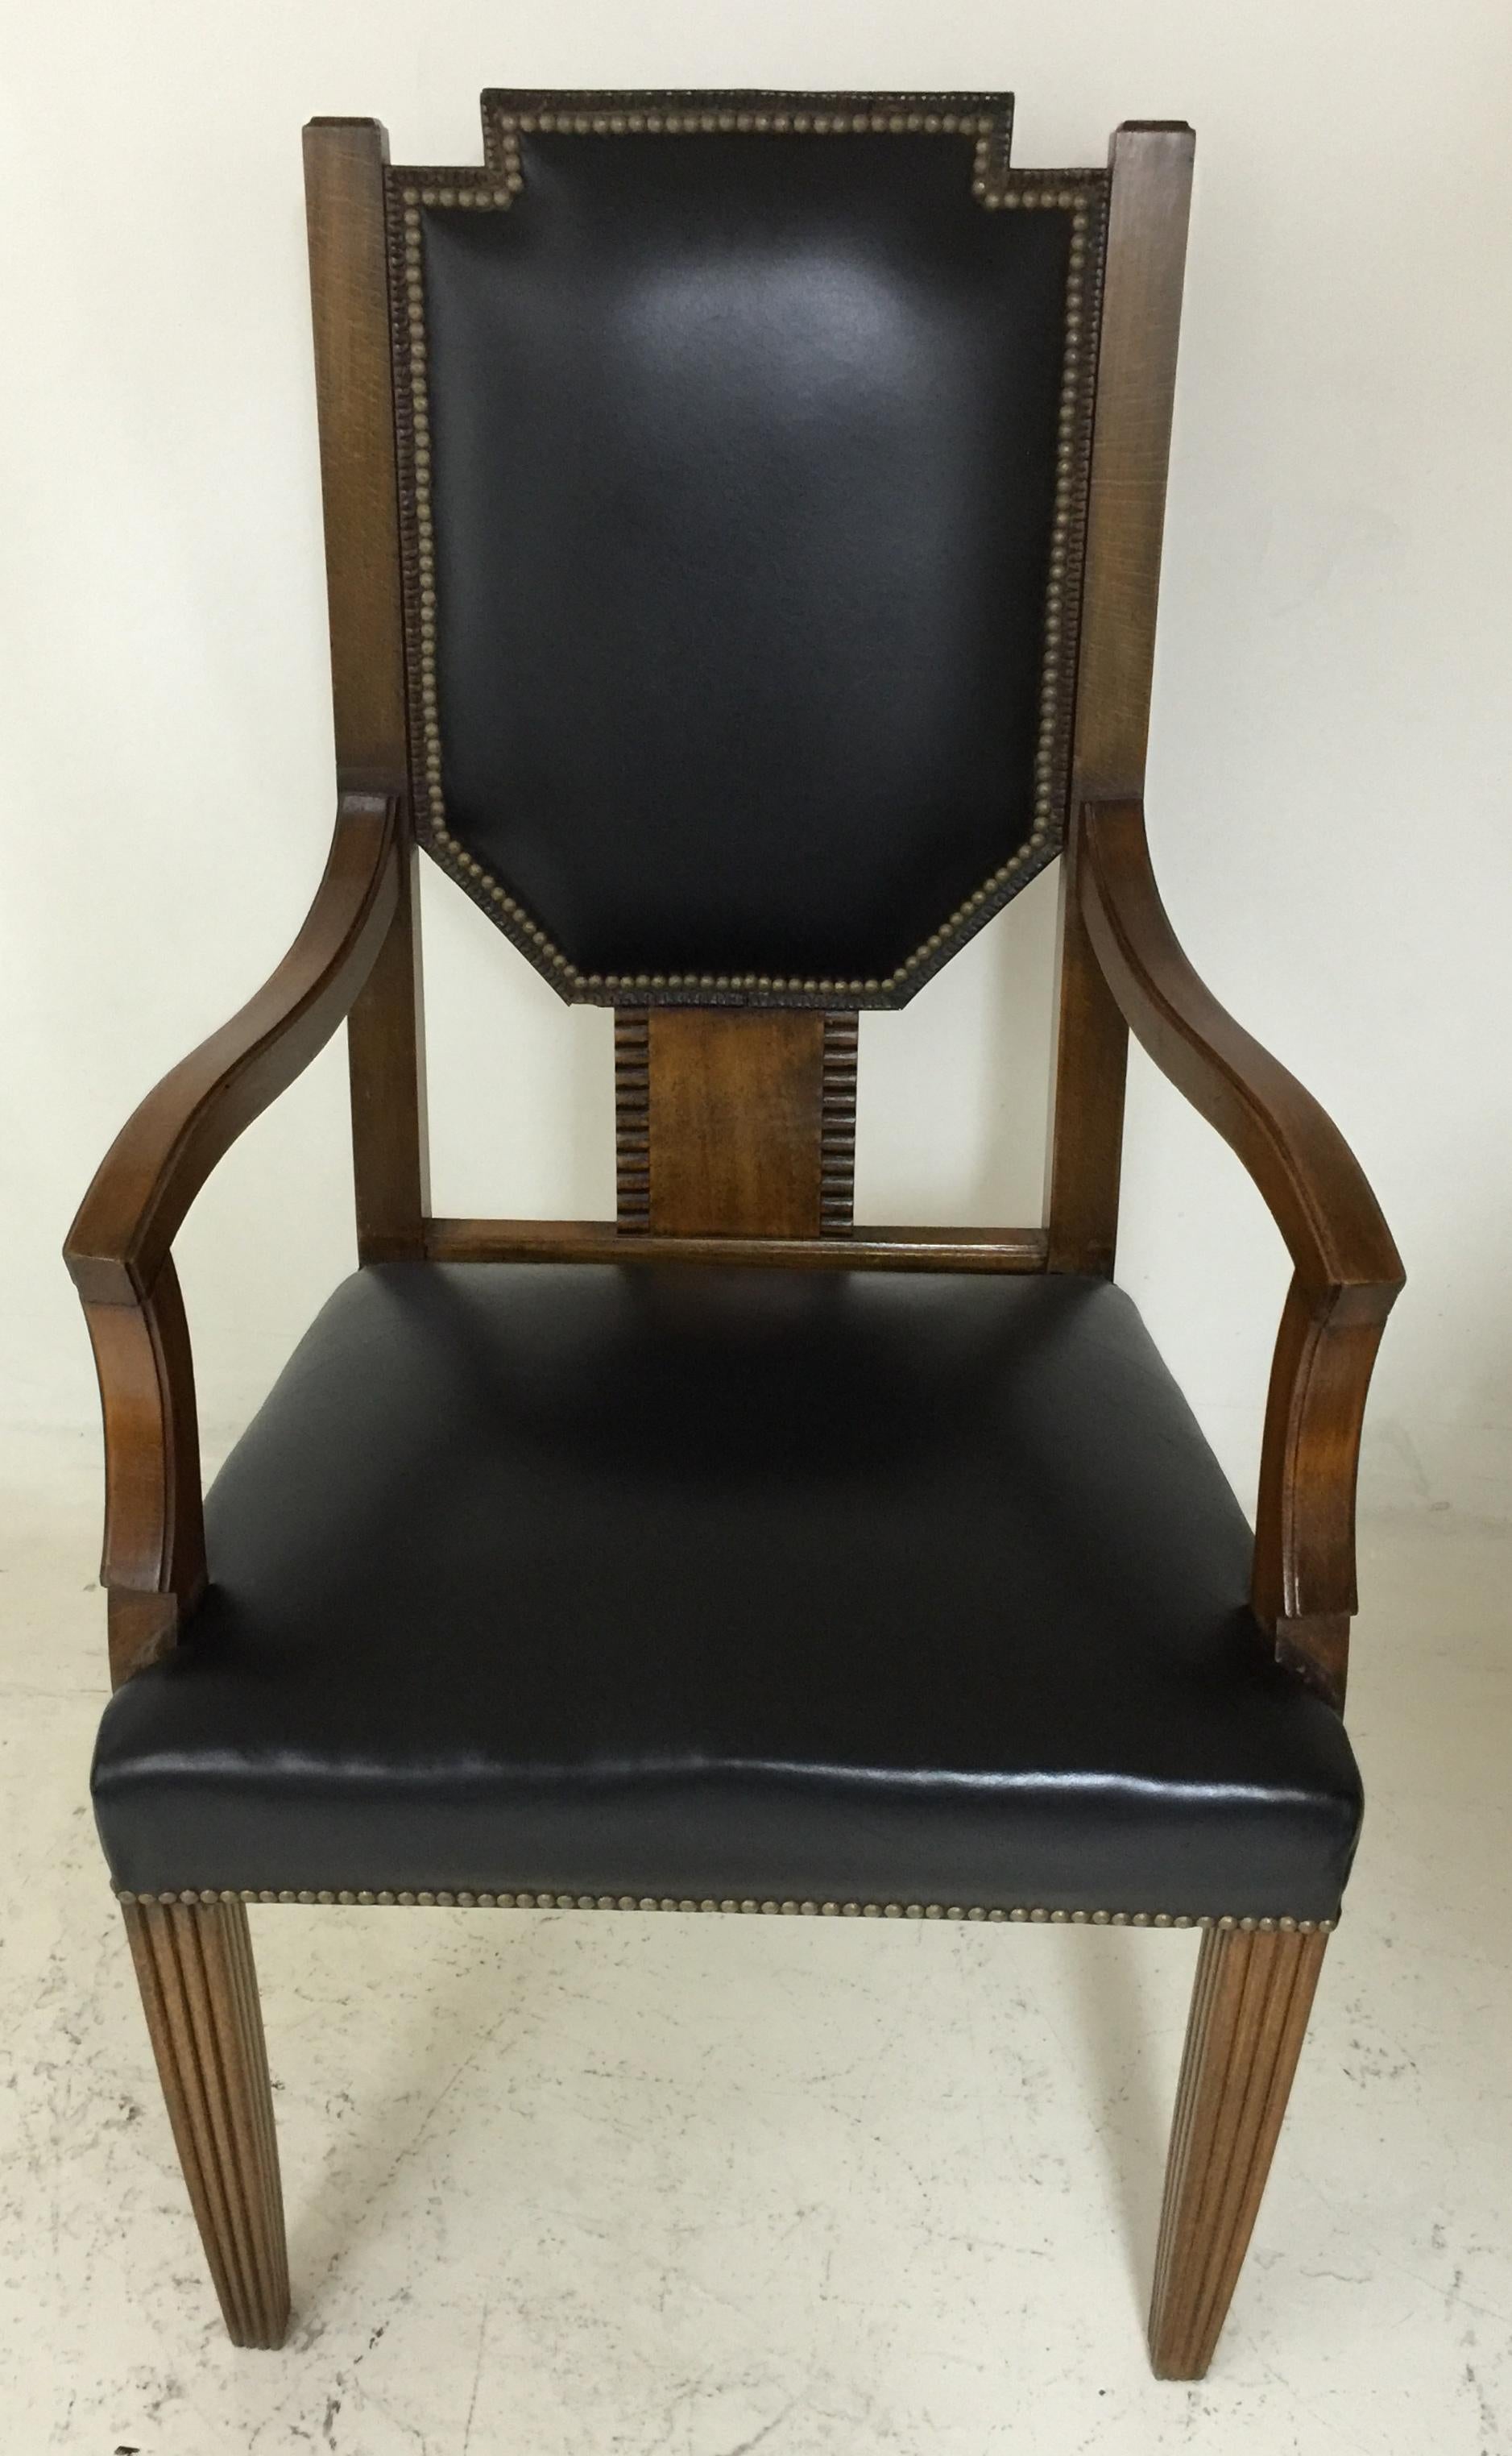 Chaise de bureau Art déco

Matière : cuir et bois
Année : 1930
Pays : Allemagne
Si vous recherchez une chaise de bureau assortie à votre bureau, nous avons ce qu'il vous faut.
Nous sommes spécialisés dans la vente d'articles Art Déco et Art Nouveau